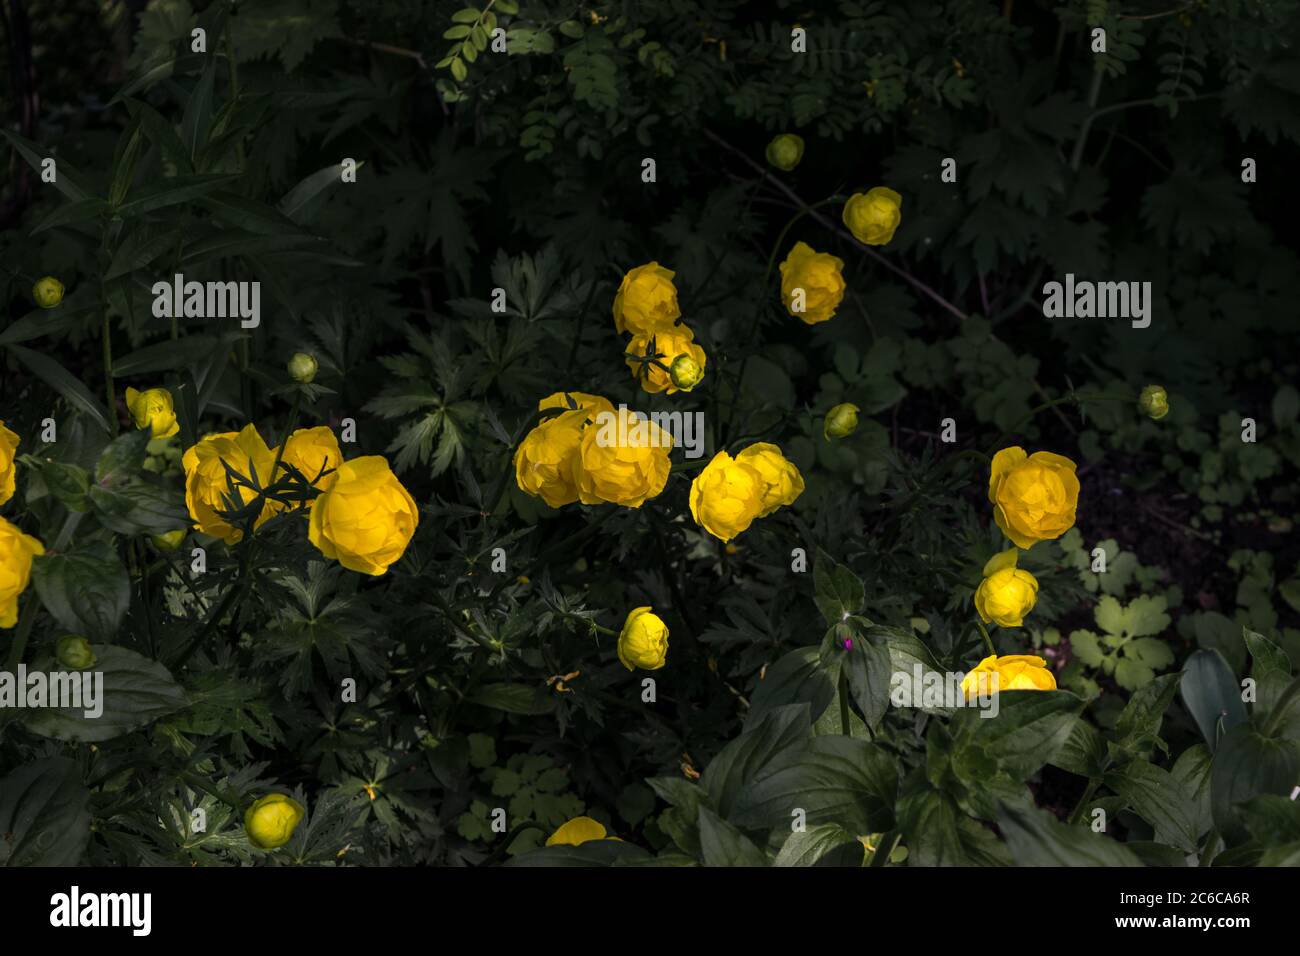 Yellow globe flowers Stock Photo